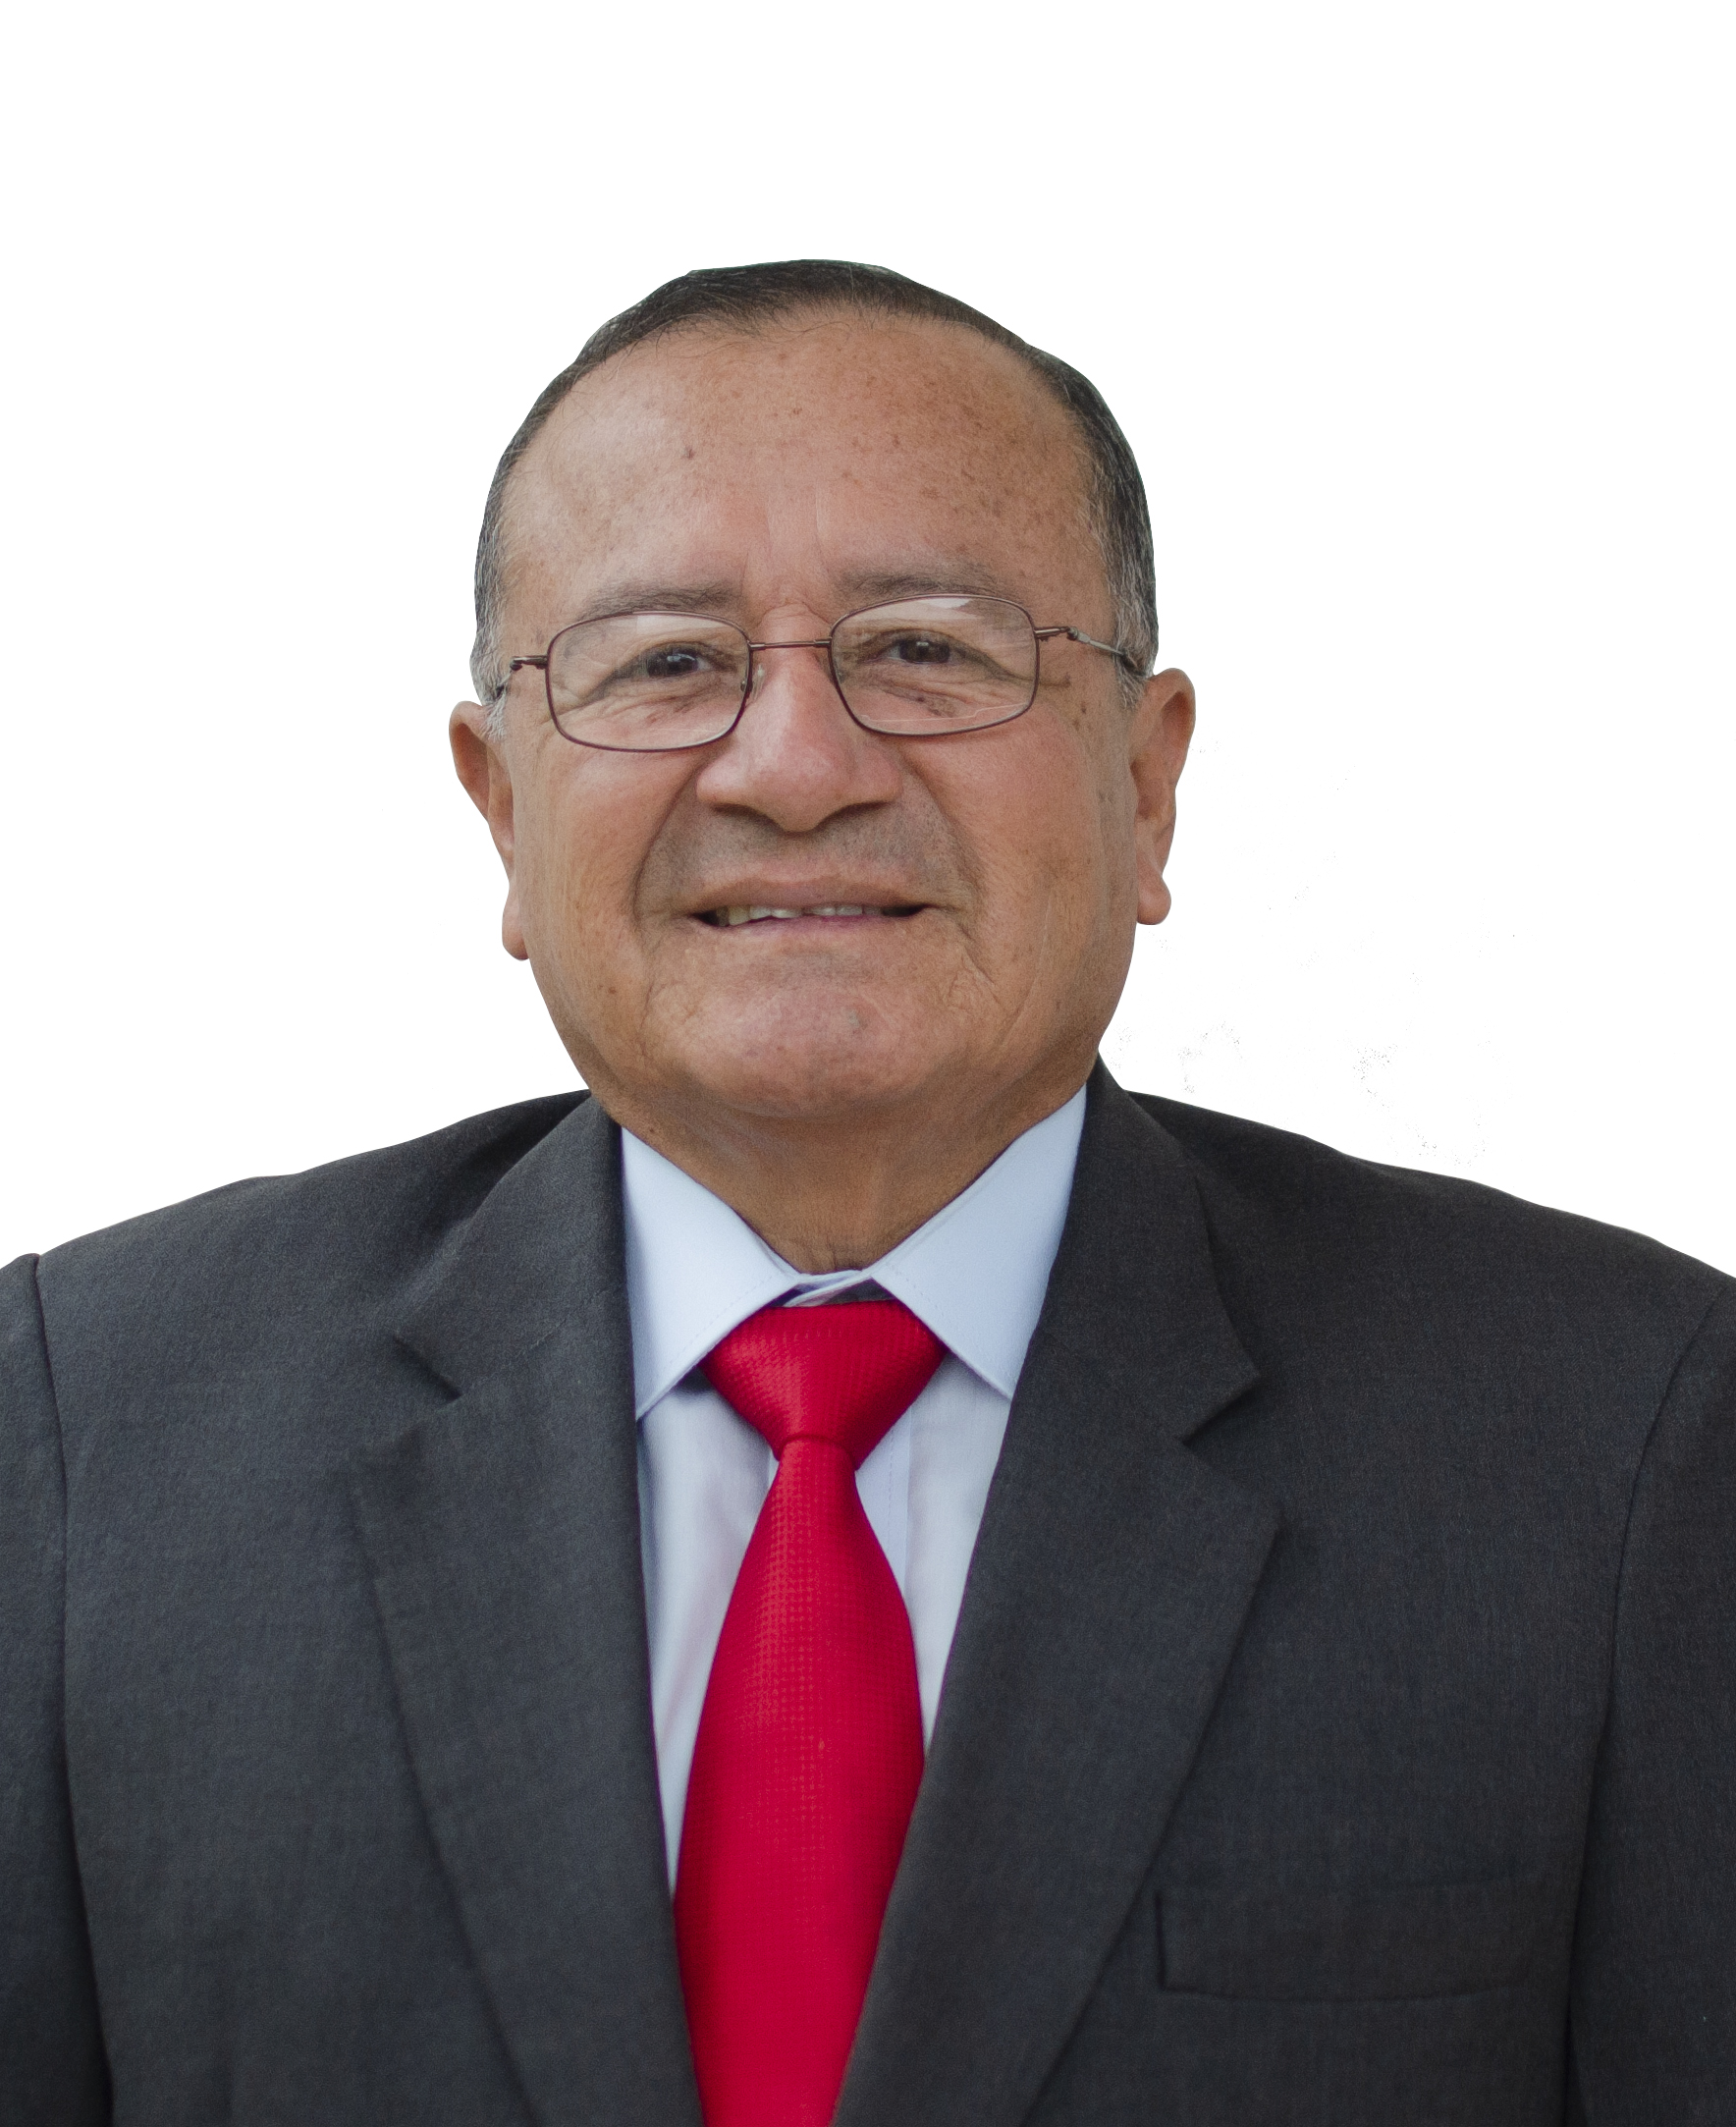 Mgs George Emigdio Quimis Chilan